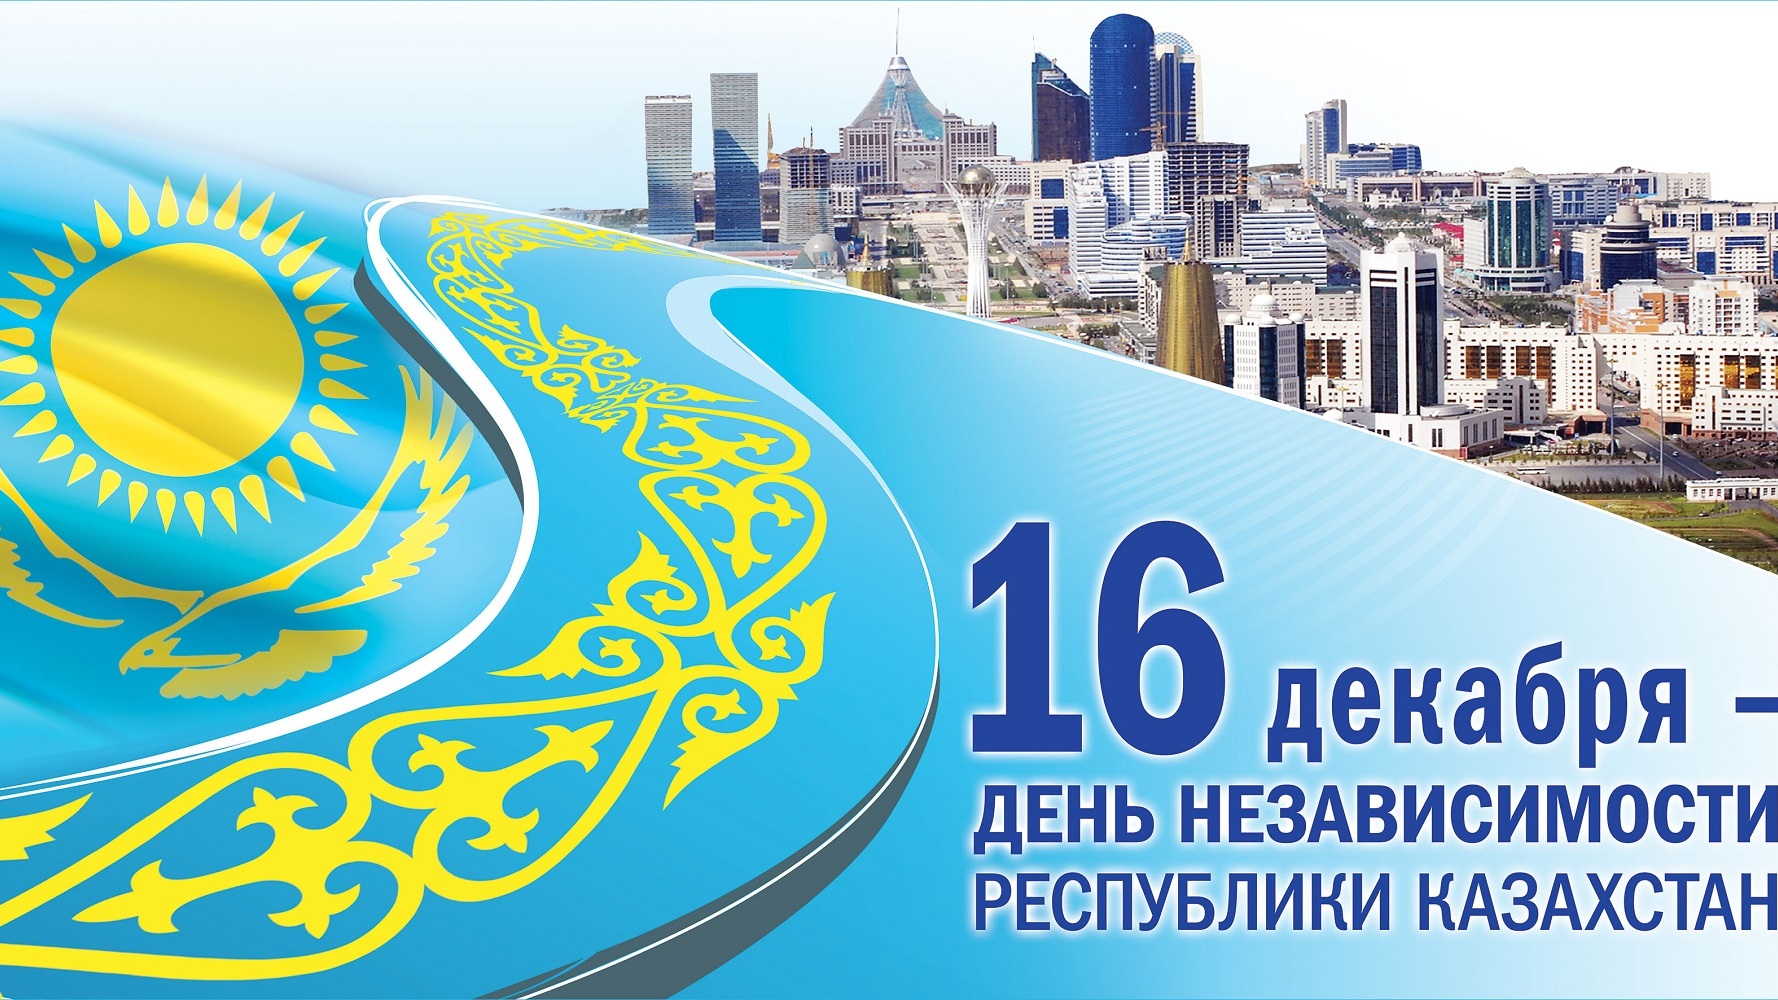 Какие праздничные мероприятия пройдут в Карагандинской области ко Дню независимости